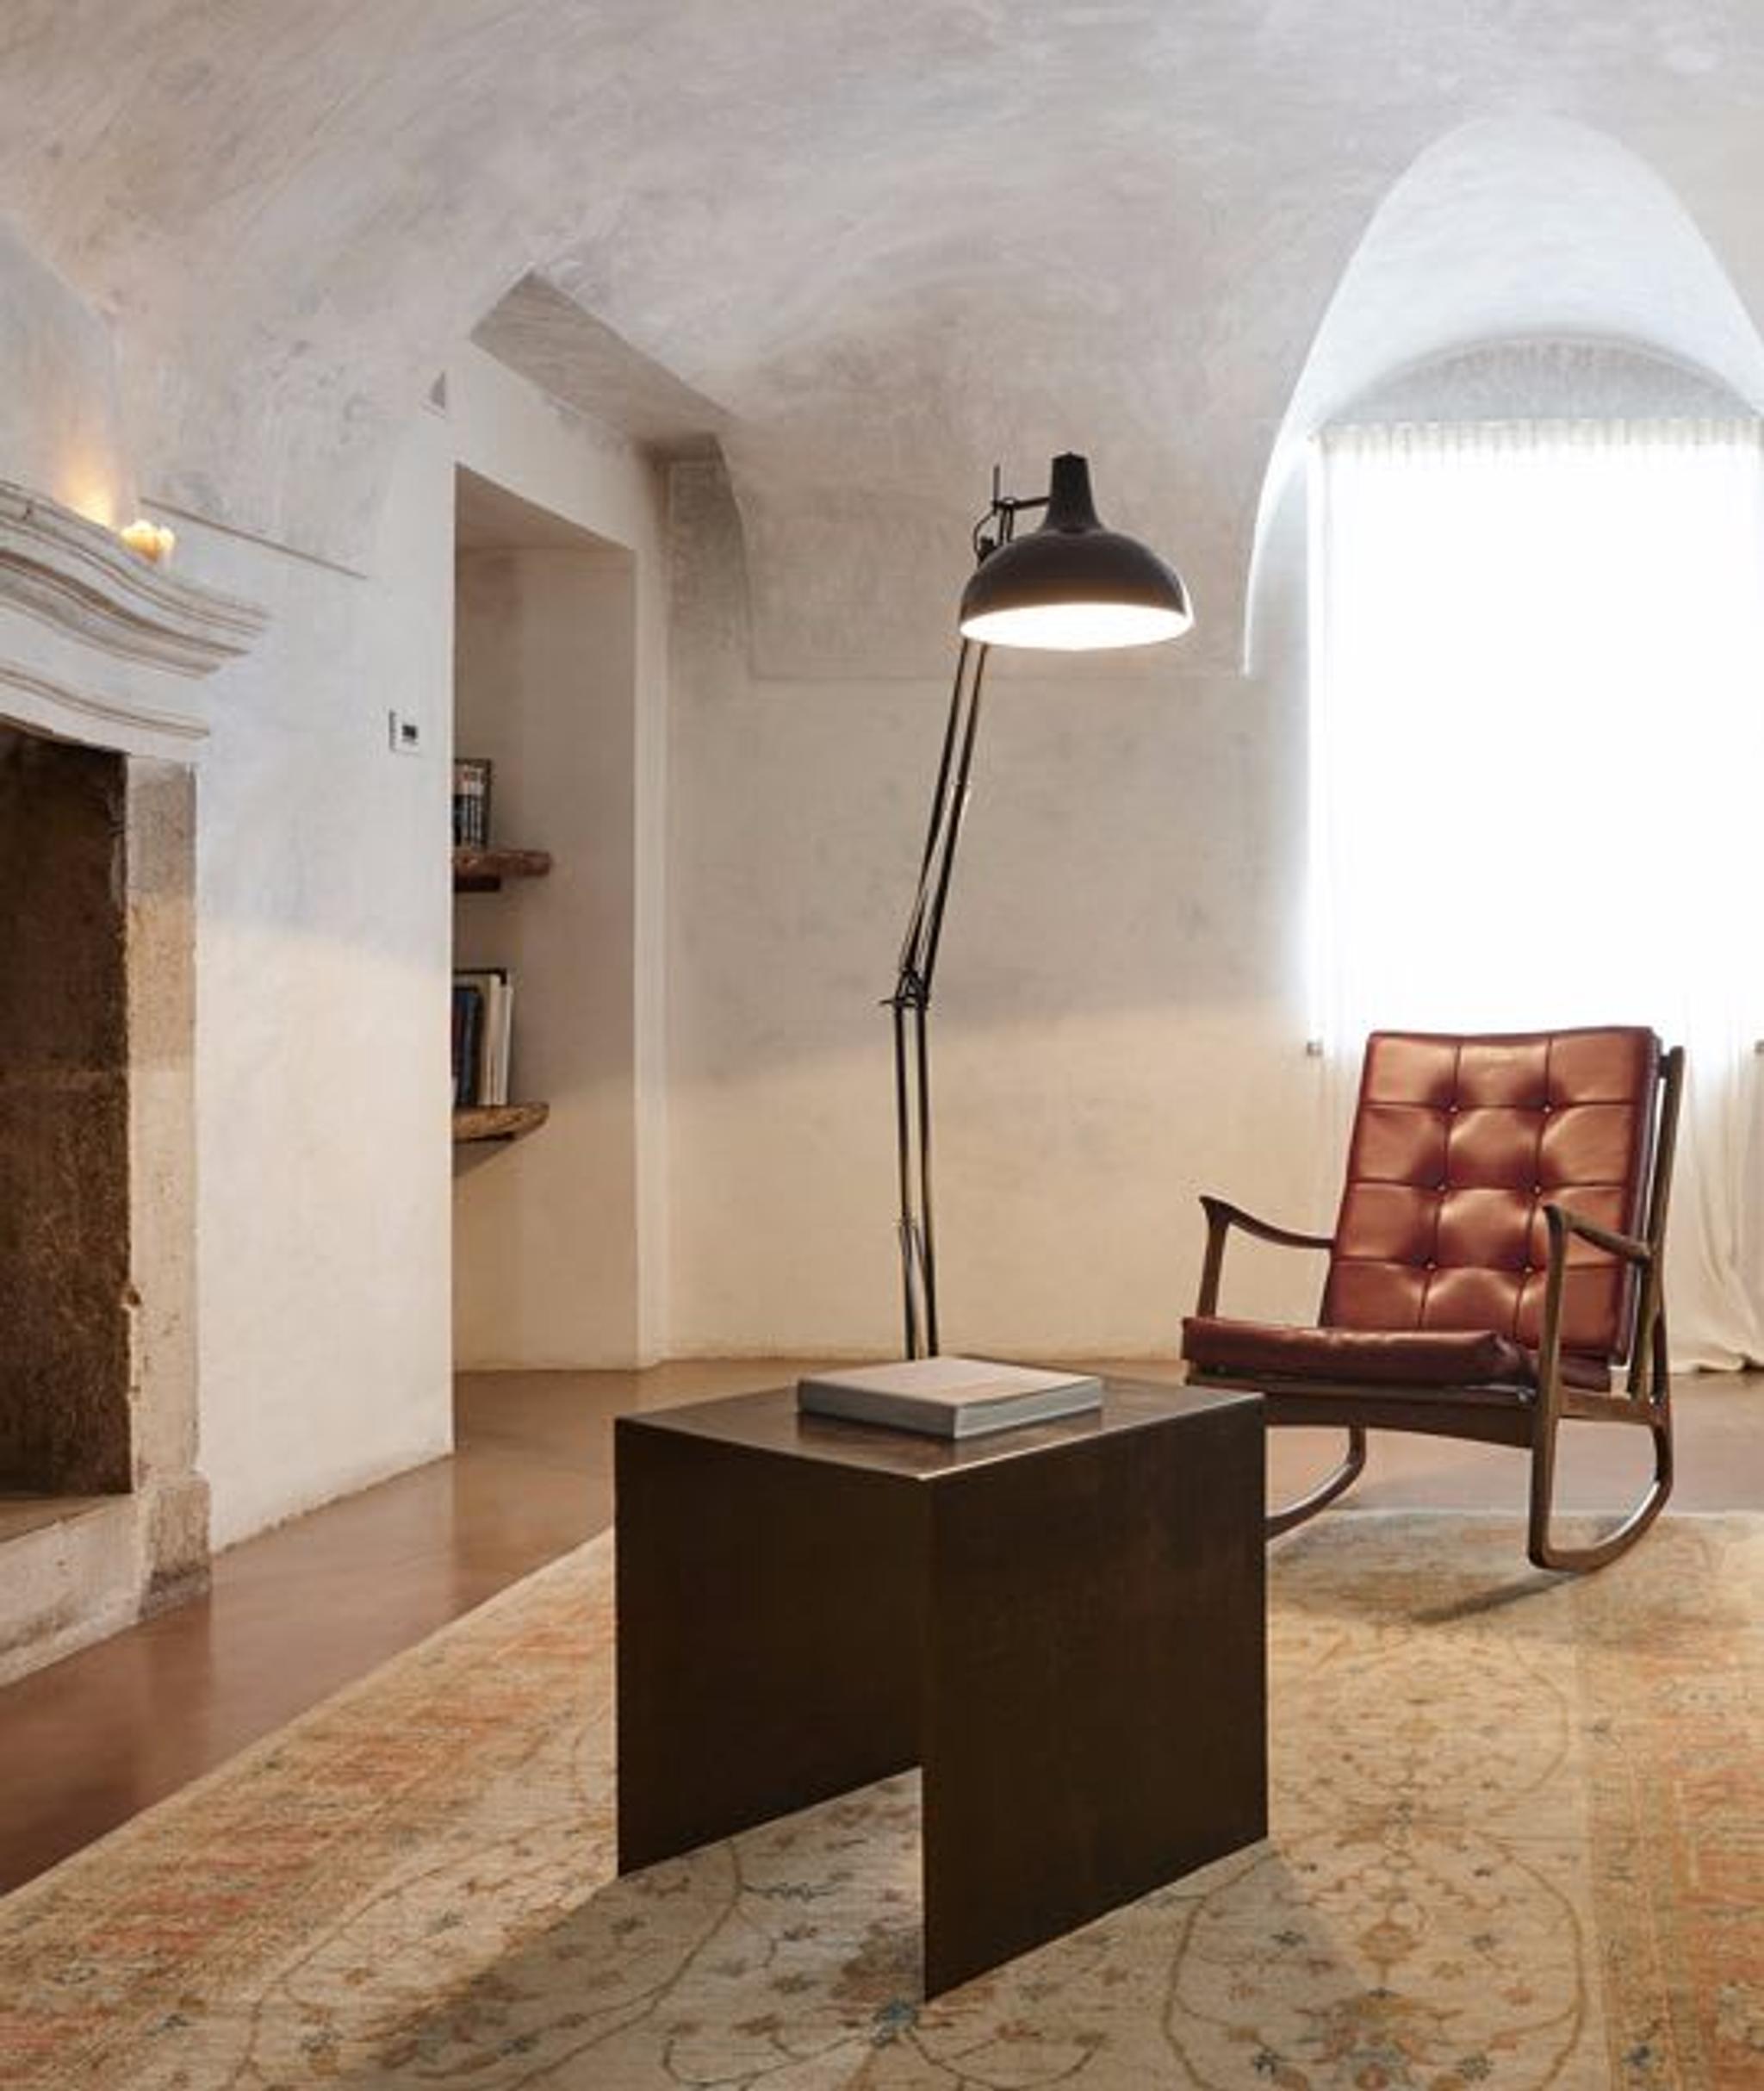 Dekorationselemente und Möbel wurden von Niko und Cristiana Romito persönlich ausgewählt.